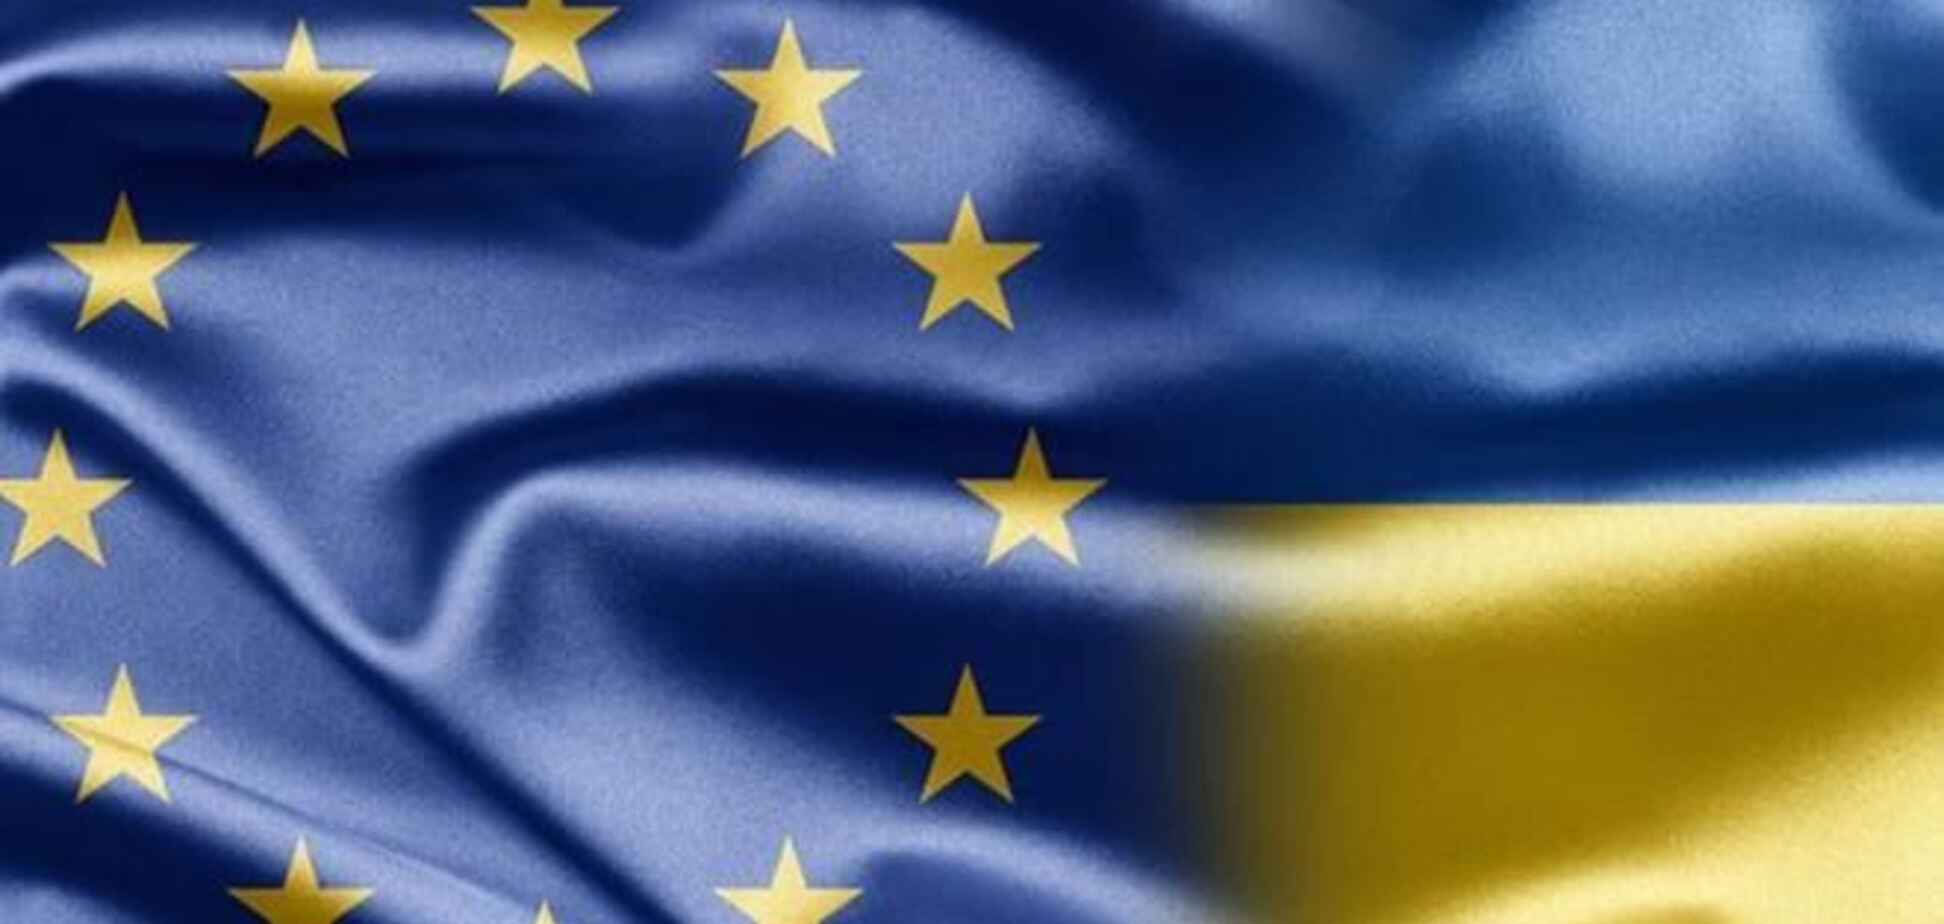 Прийняті 16 січня закони віддаляють Україну від ЄС - МЗС Польщі